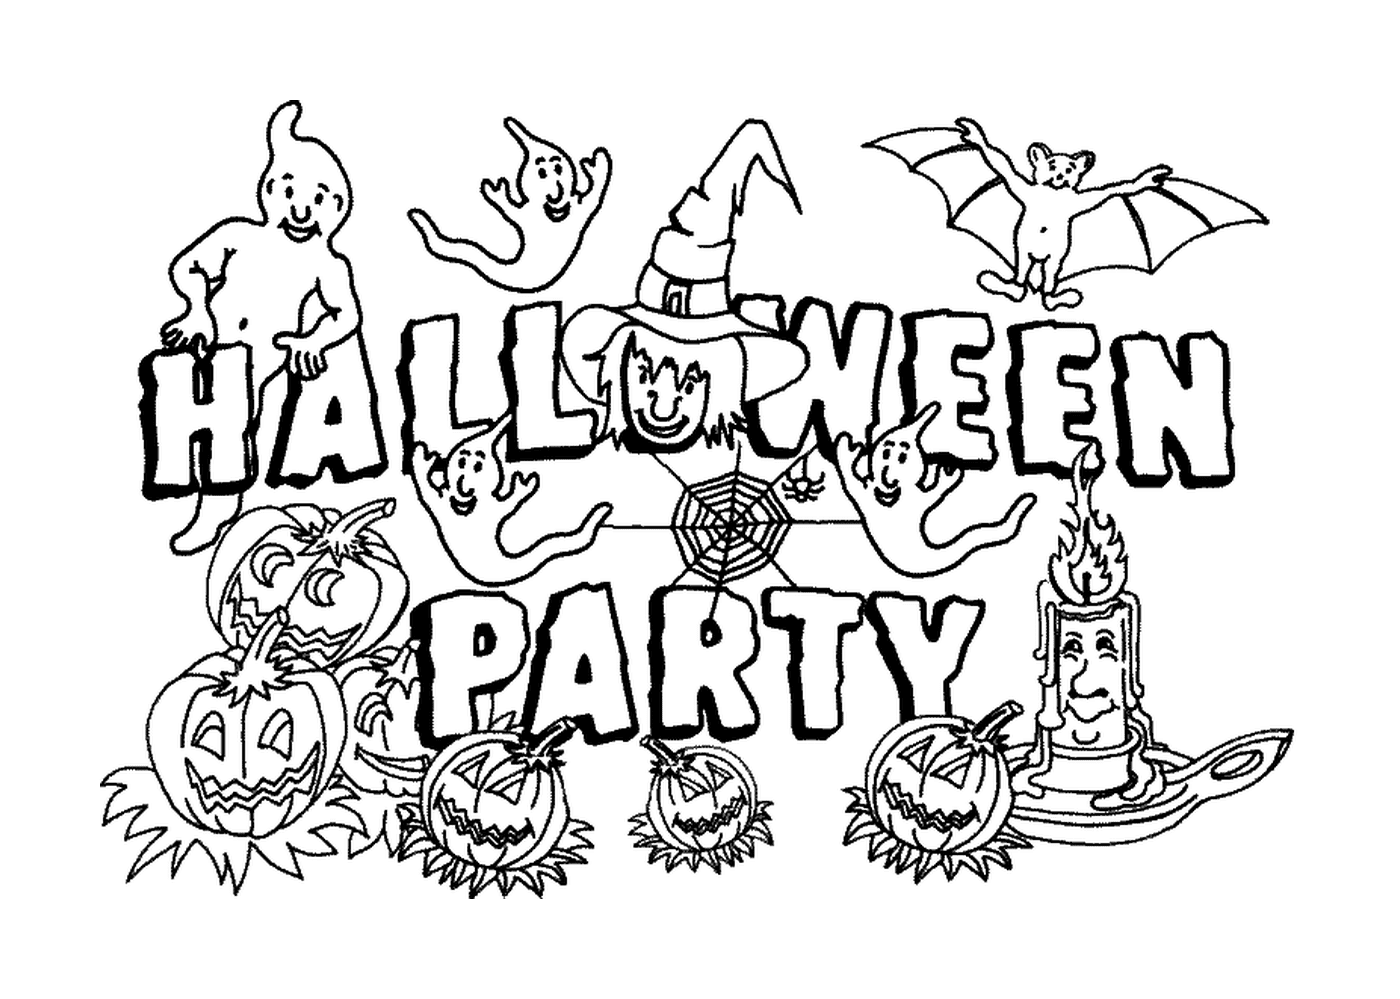  Хэллоуин-вечеринка с тыквенными и призраками 